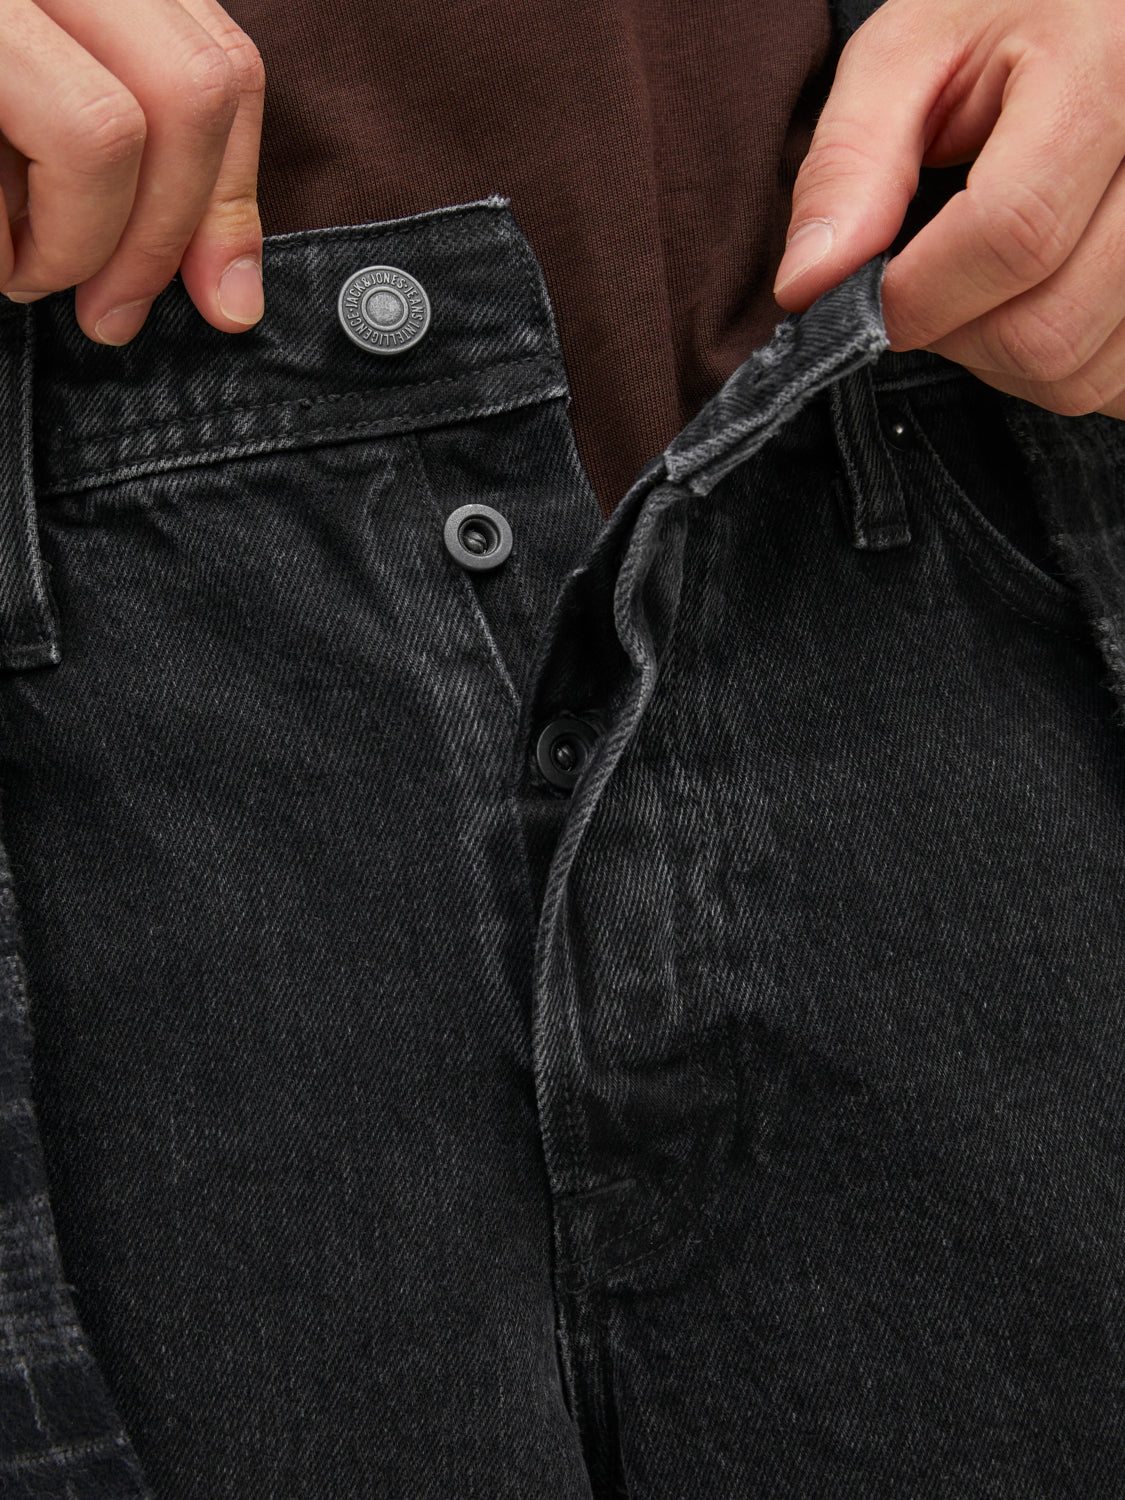 JJIEDDIE Jeans - Black Denim